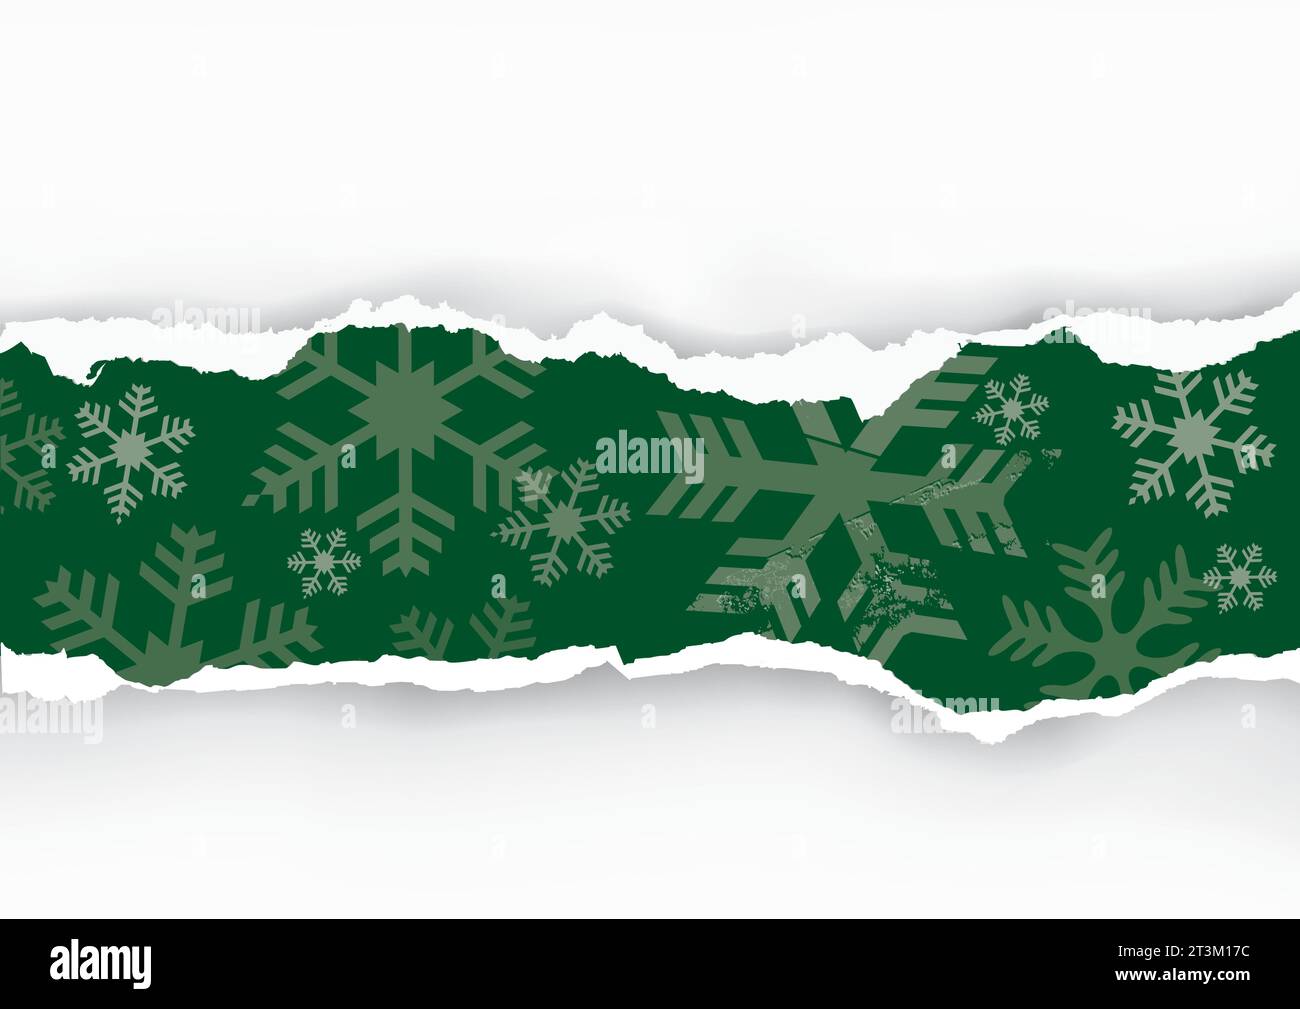 Striscia di carta strappata a Natale con fiocchi di neve. Immagine dello sfondo di carta verde natalizia con il posto per il testo o l'immagine. Vettore disponibile. Illustrazione Vettoriale